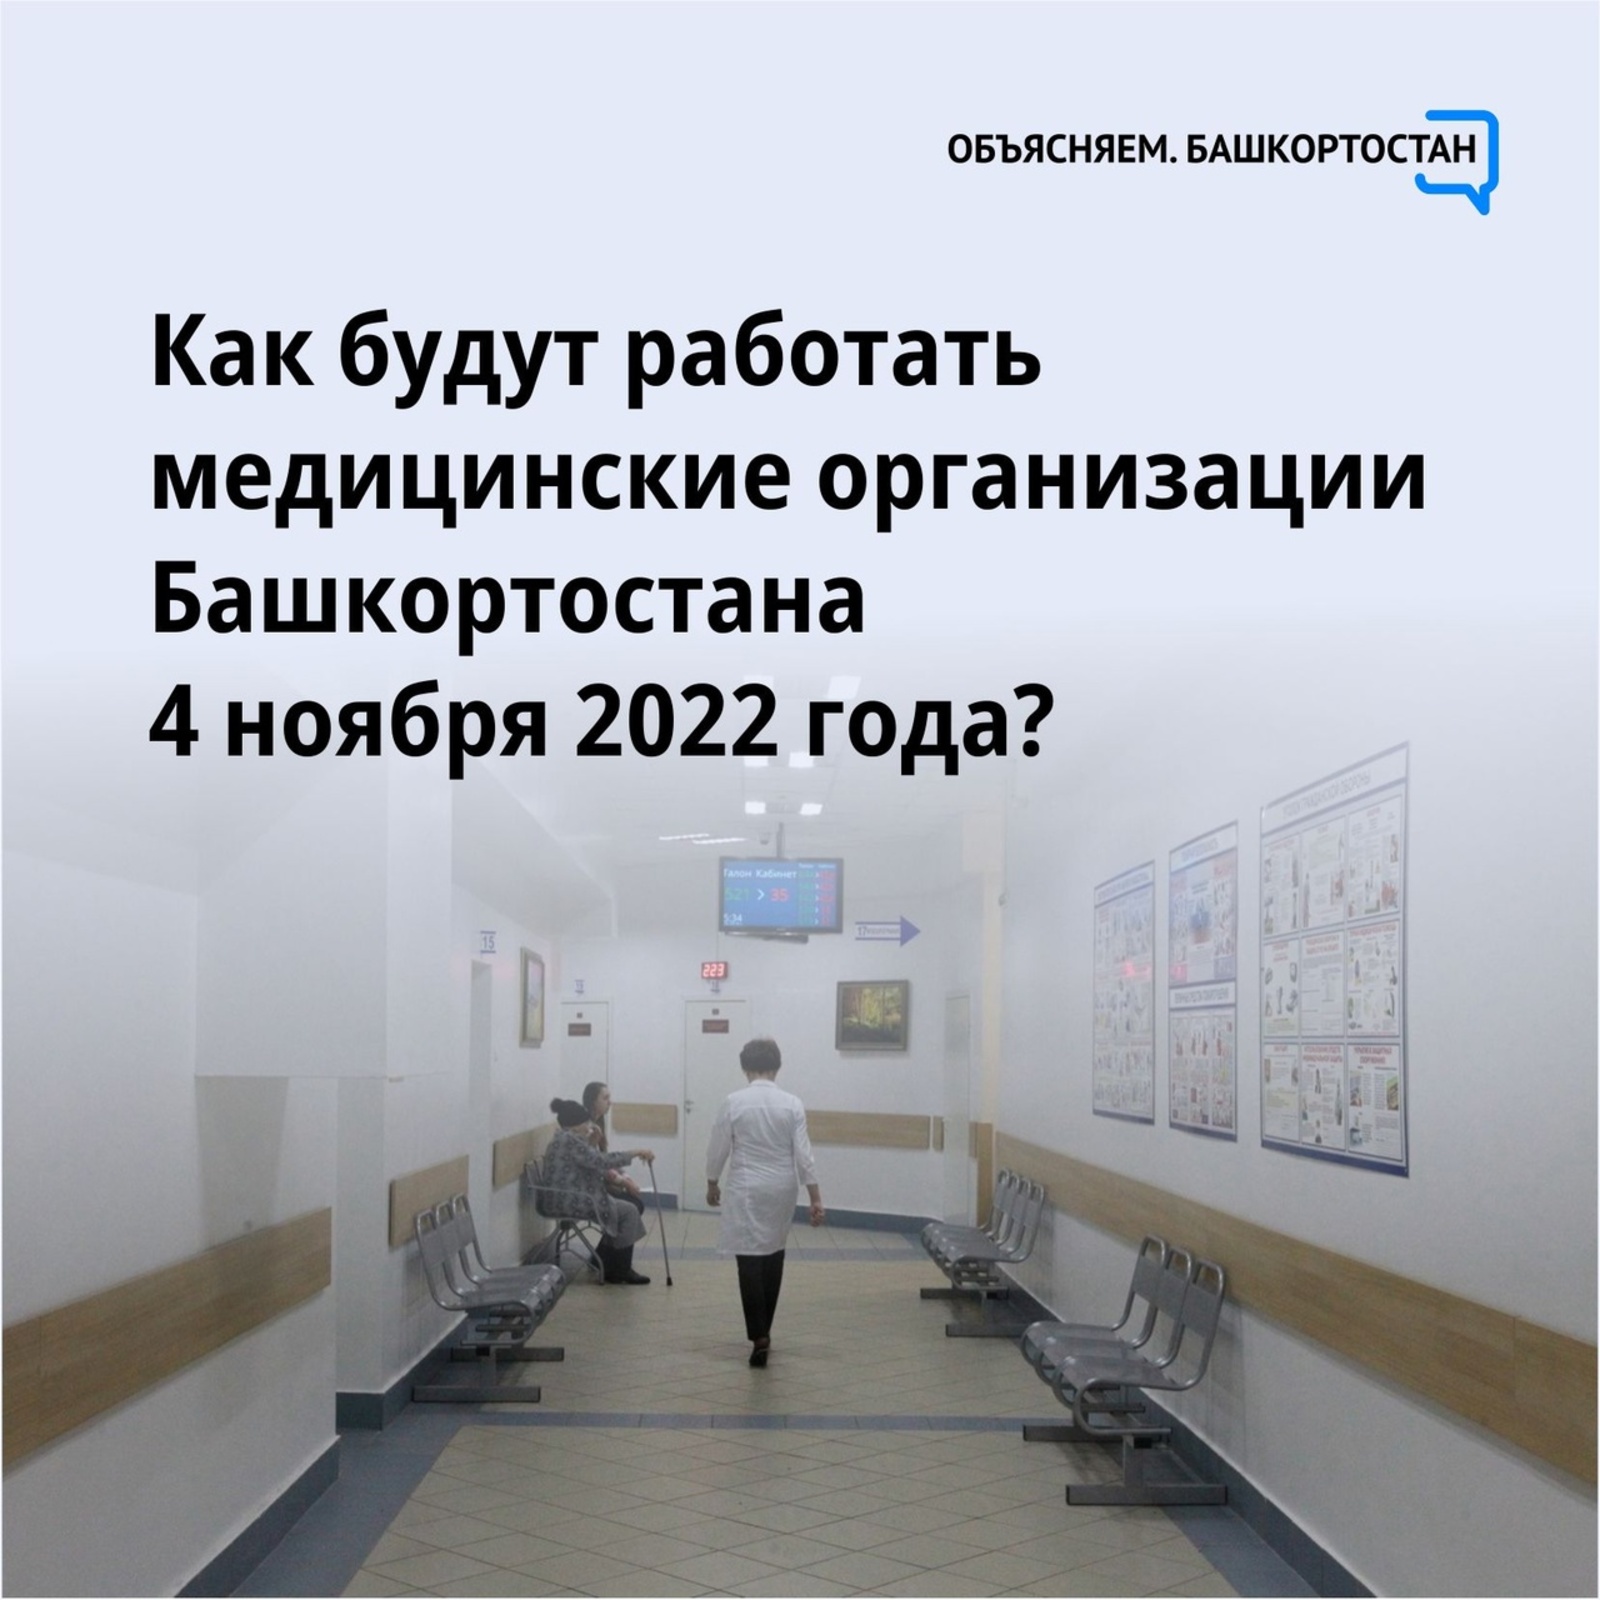 Как будут работать медорганизации Башкортостана 4 ноября 2022 года?